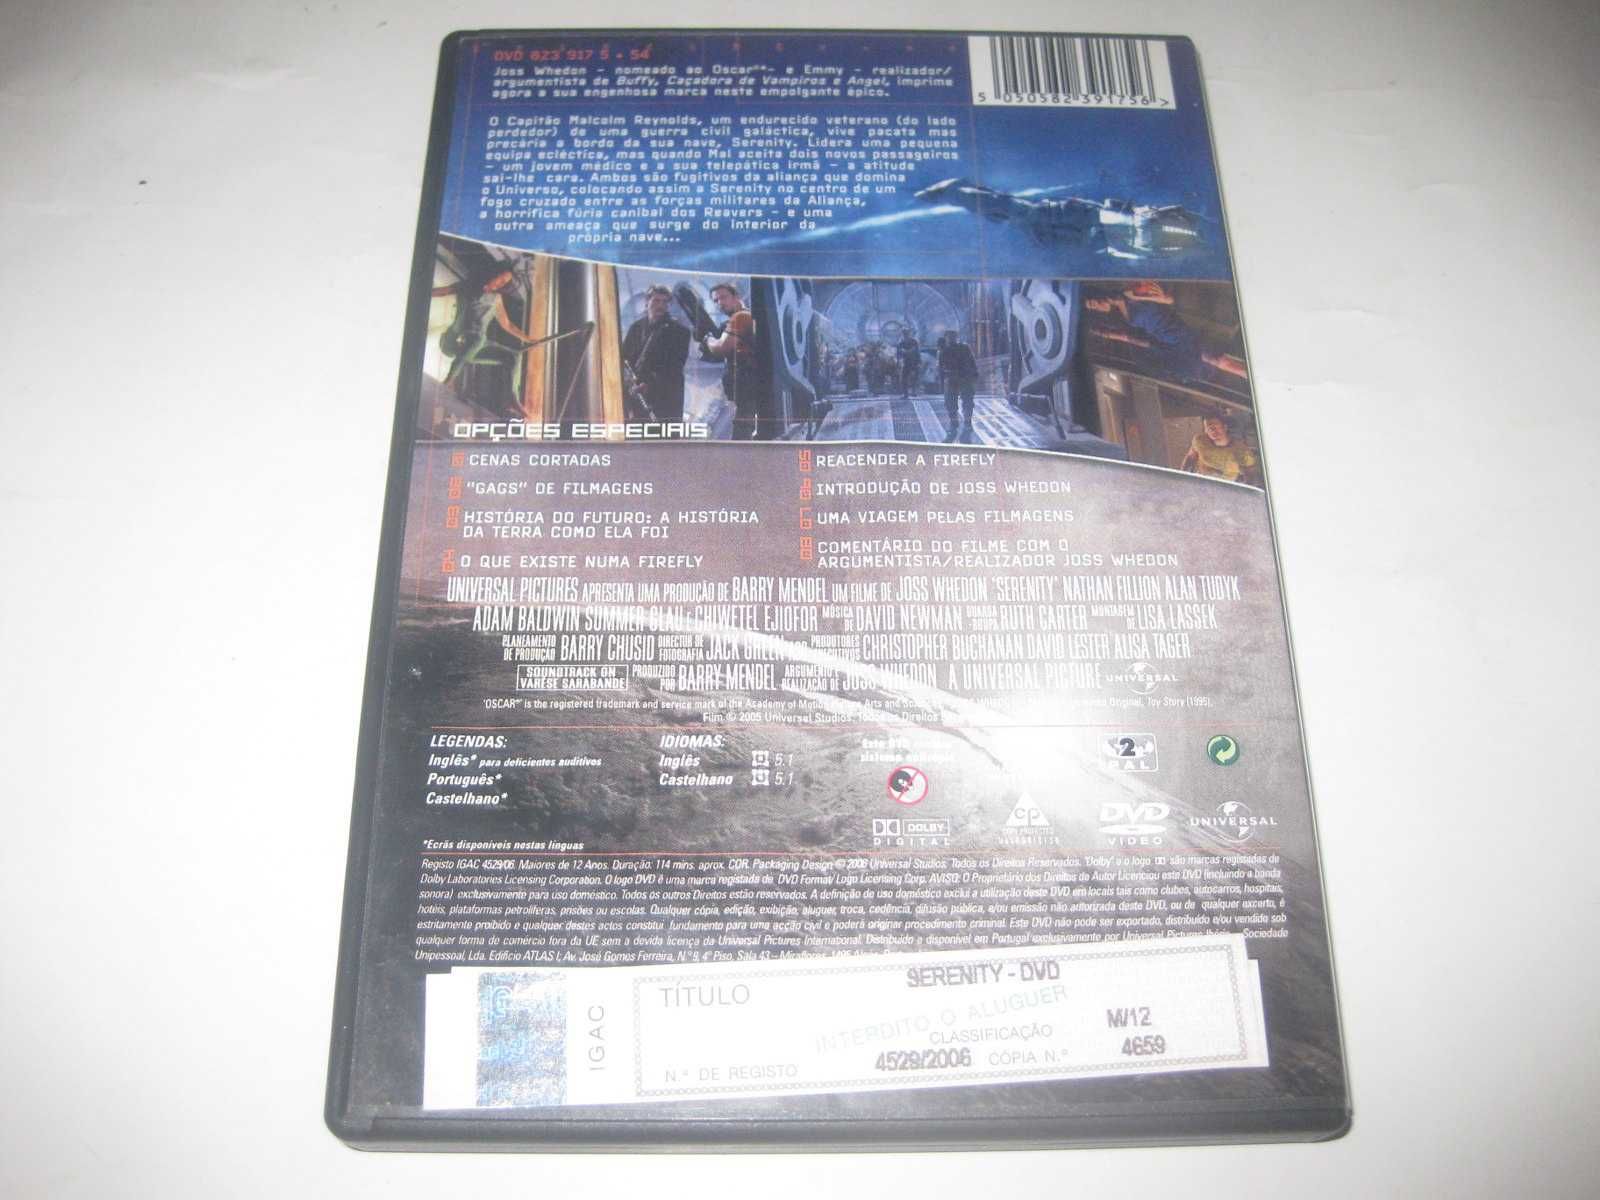 DVD "Serenity" de Joss Whedon